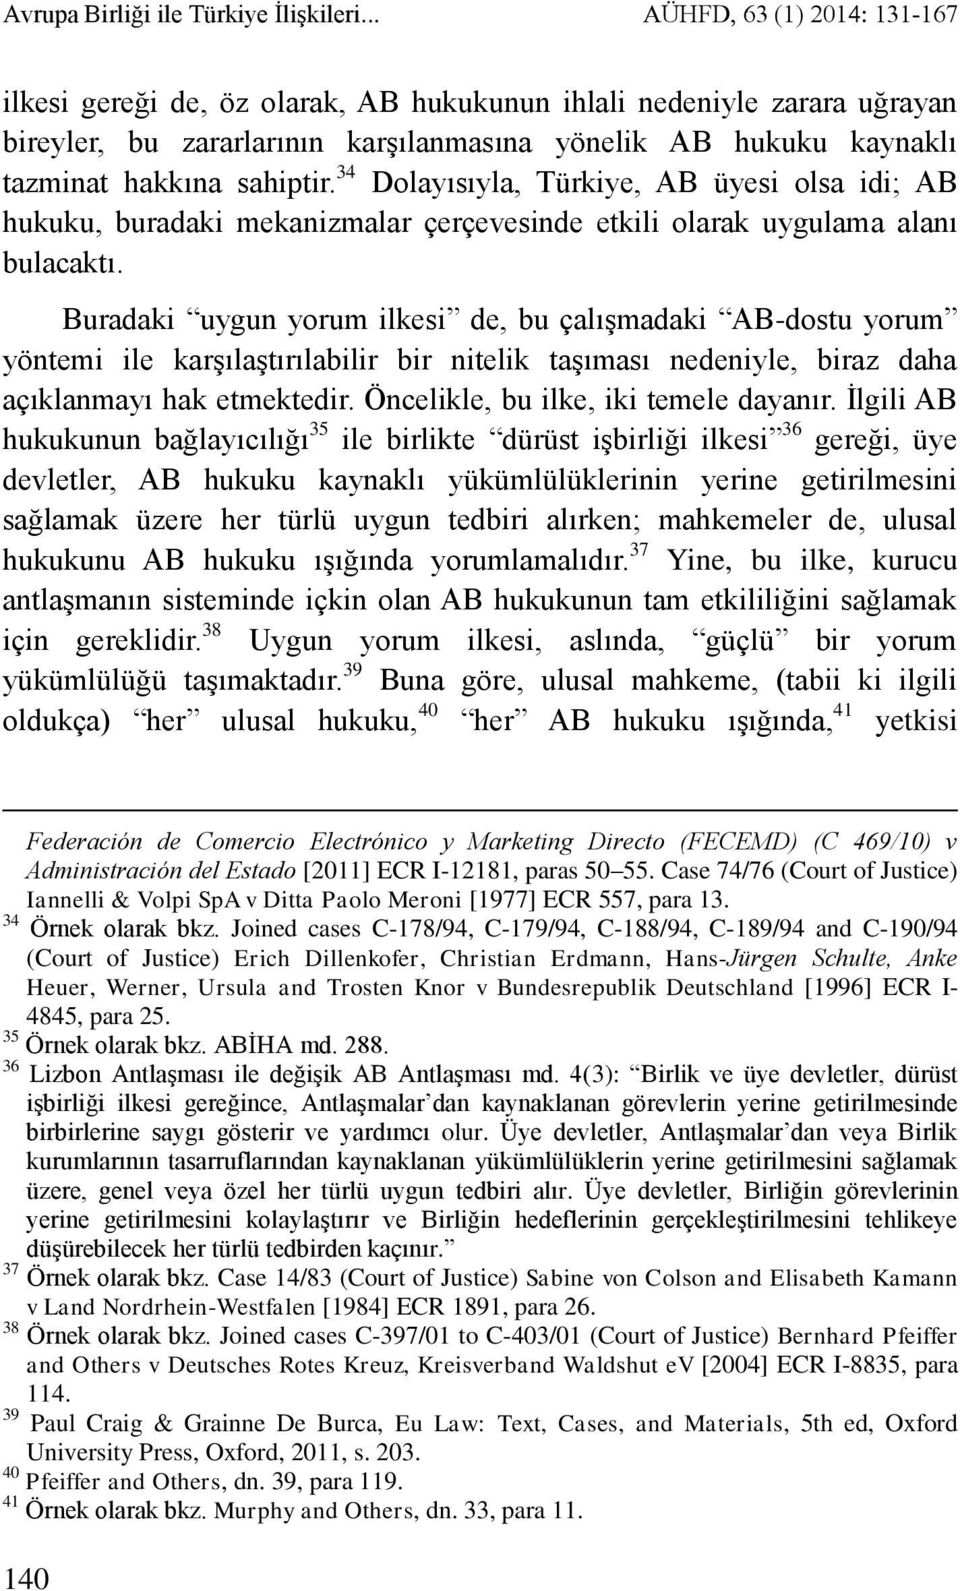 34 Dolayısıyla, Türkiye, AB üyesi olsa idi; AB hukuku, buradaki mekanizmalar çerçevesinde etkili olarak uygulama alanı bulacaktı.